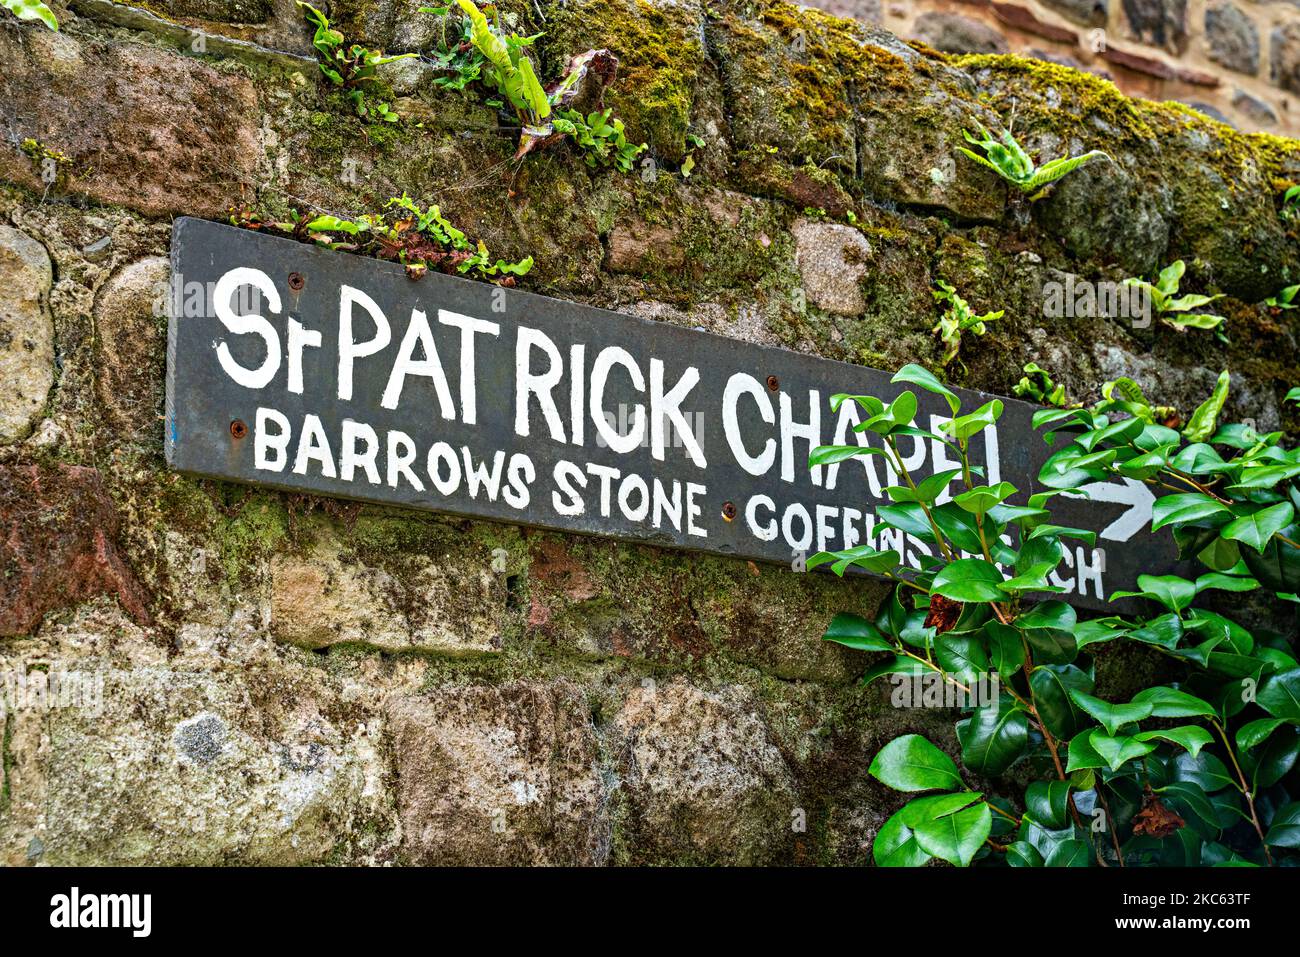 Sign for Barrows Stone Coffins, Heysham, Lancashire, UK Stock Photo